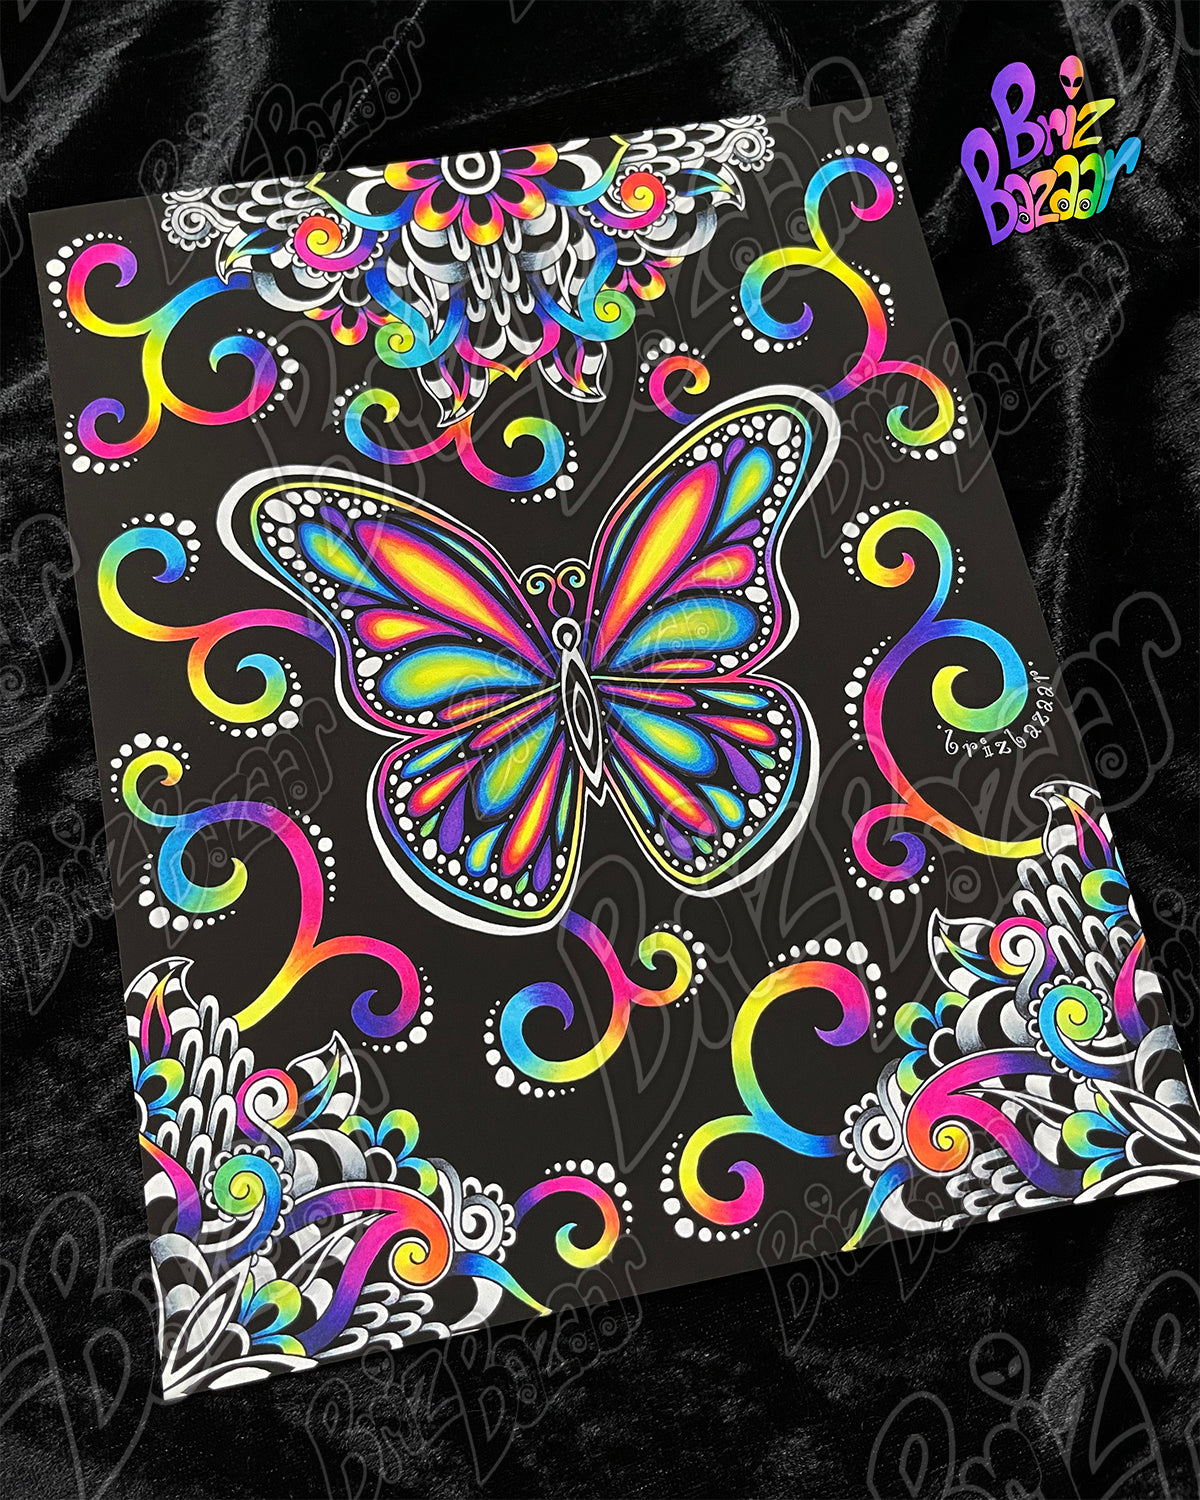 8" x 10" Art Print of Butterfly Vibez